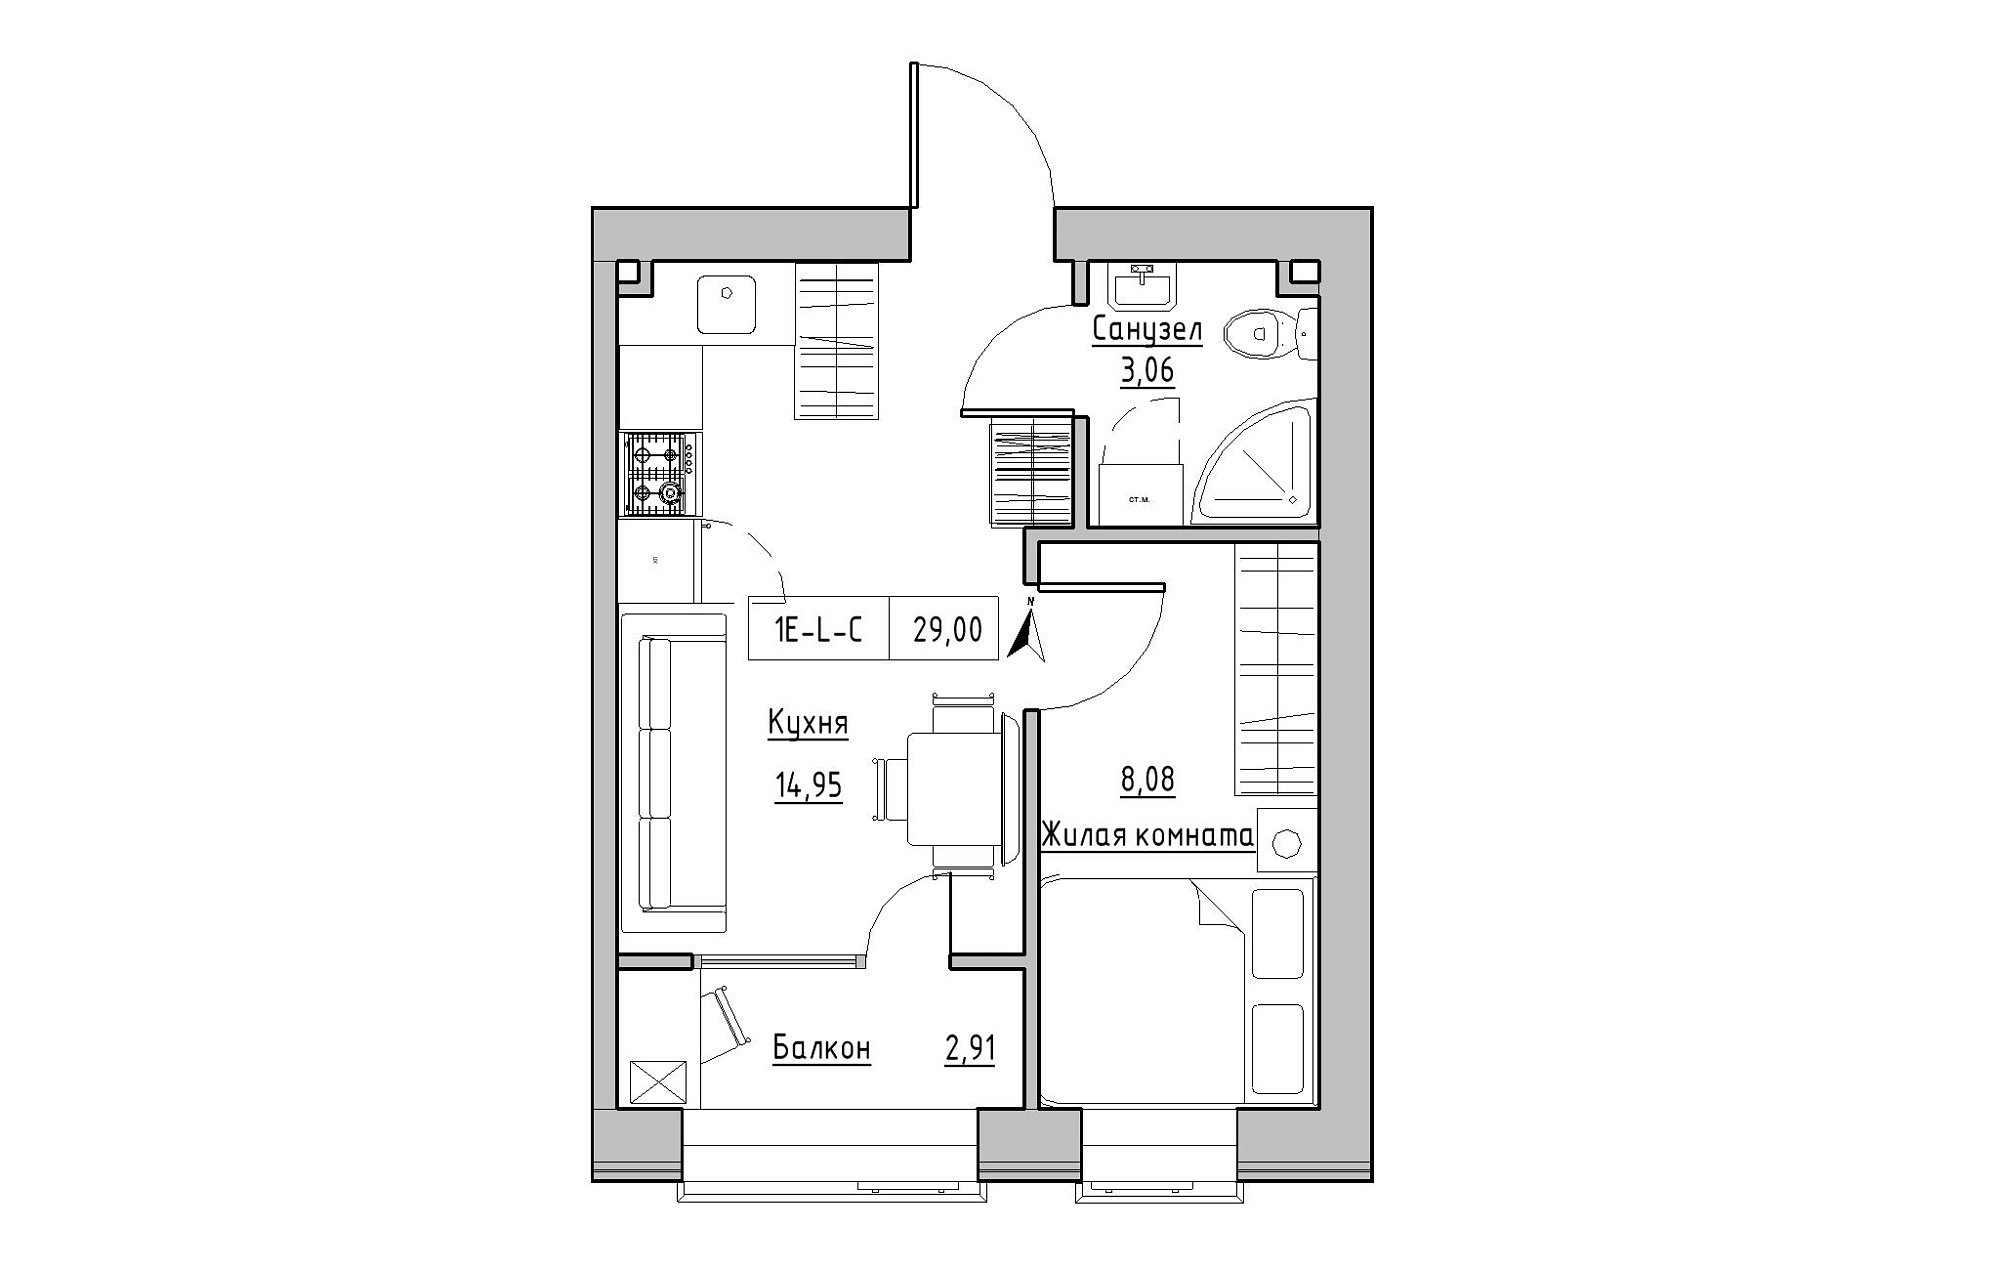 Планировка 1-к квартира площей 29м2, KS-019-01/0009.